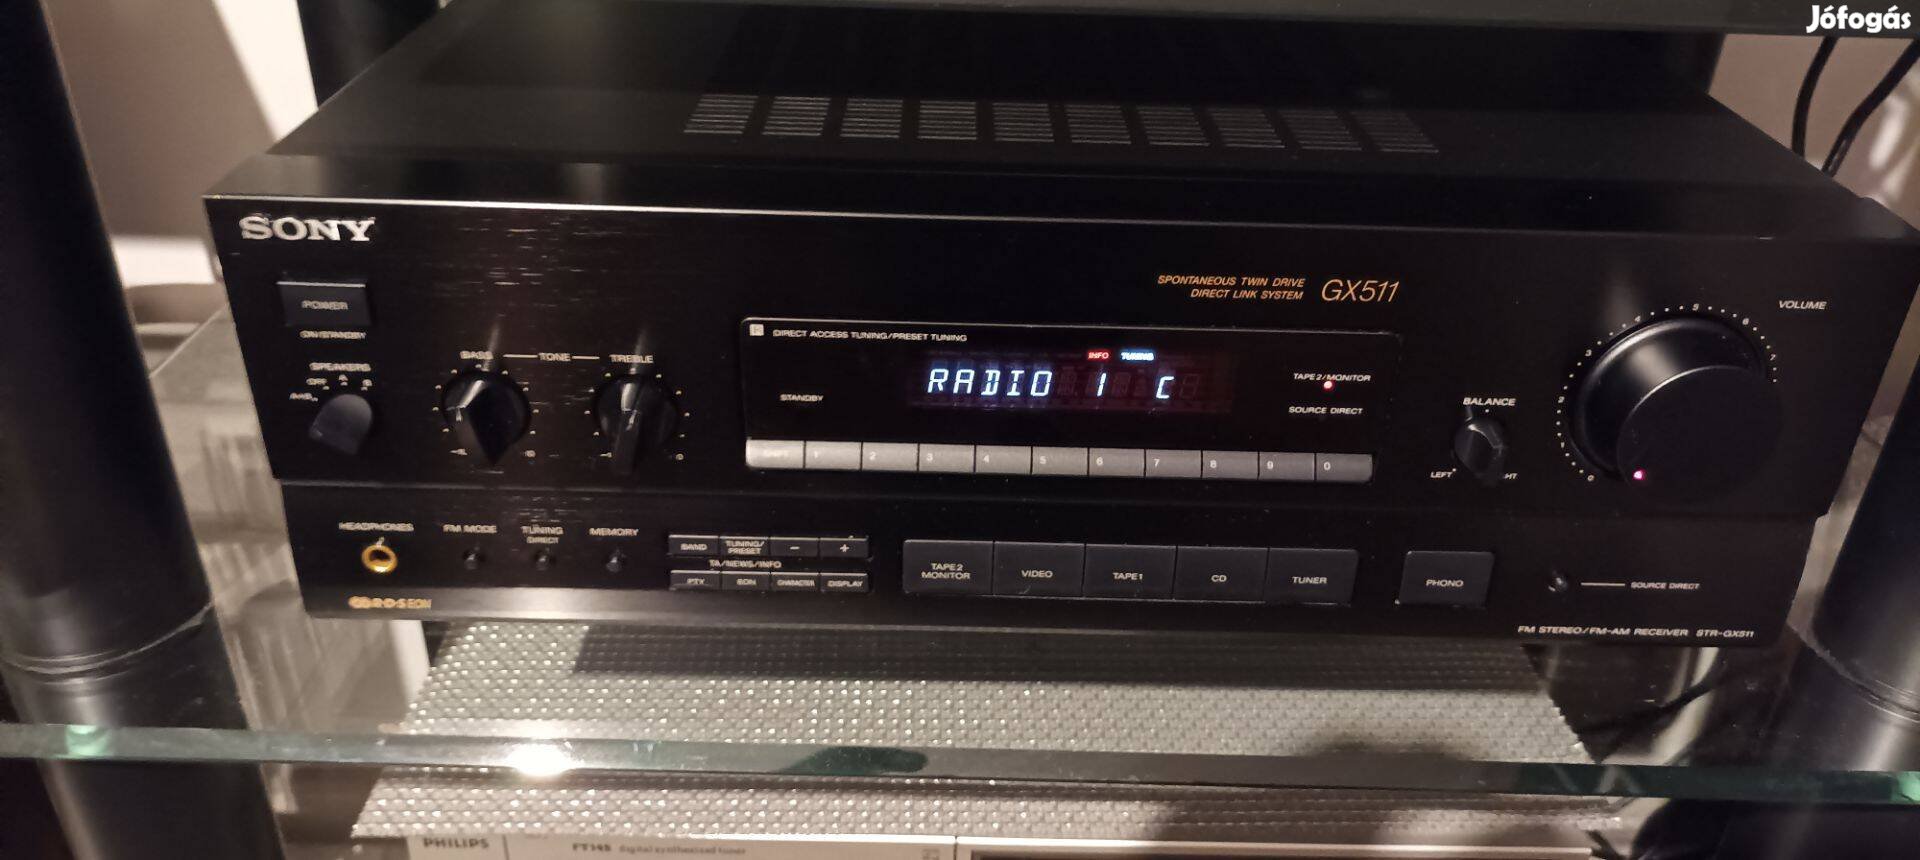 Eladó Sony STR-Gx511- es sztereó rádios erősítő